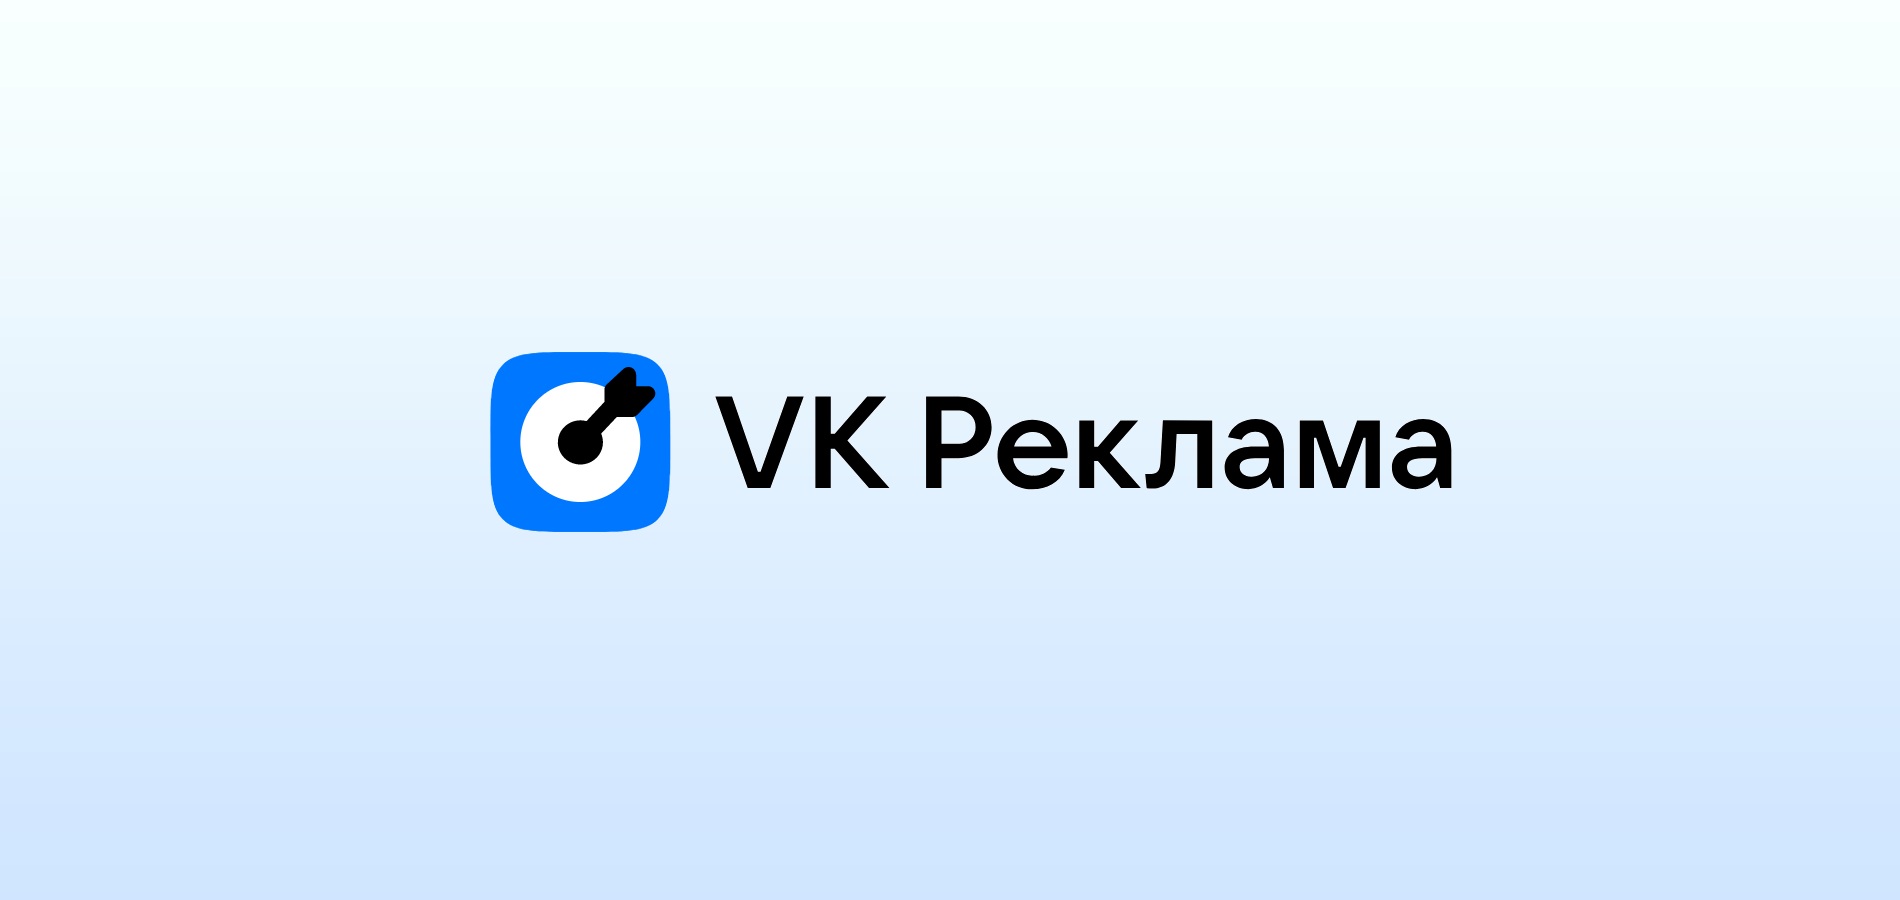 VK Реклама добавила лид-формы со скидками и бонусами